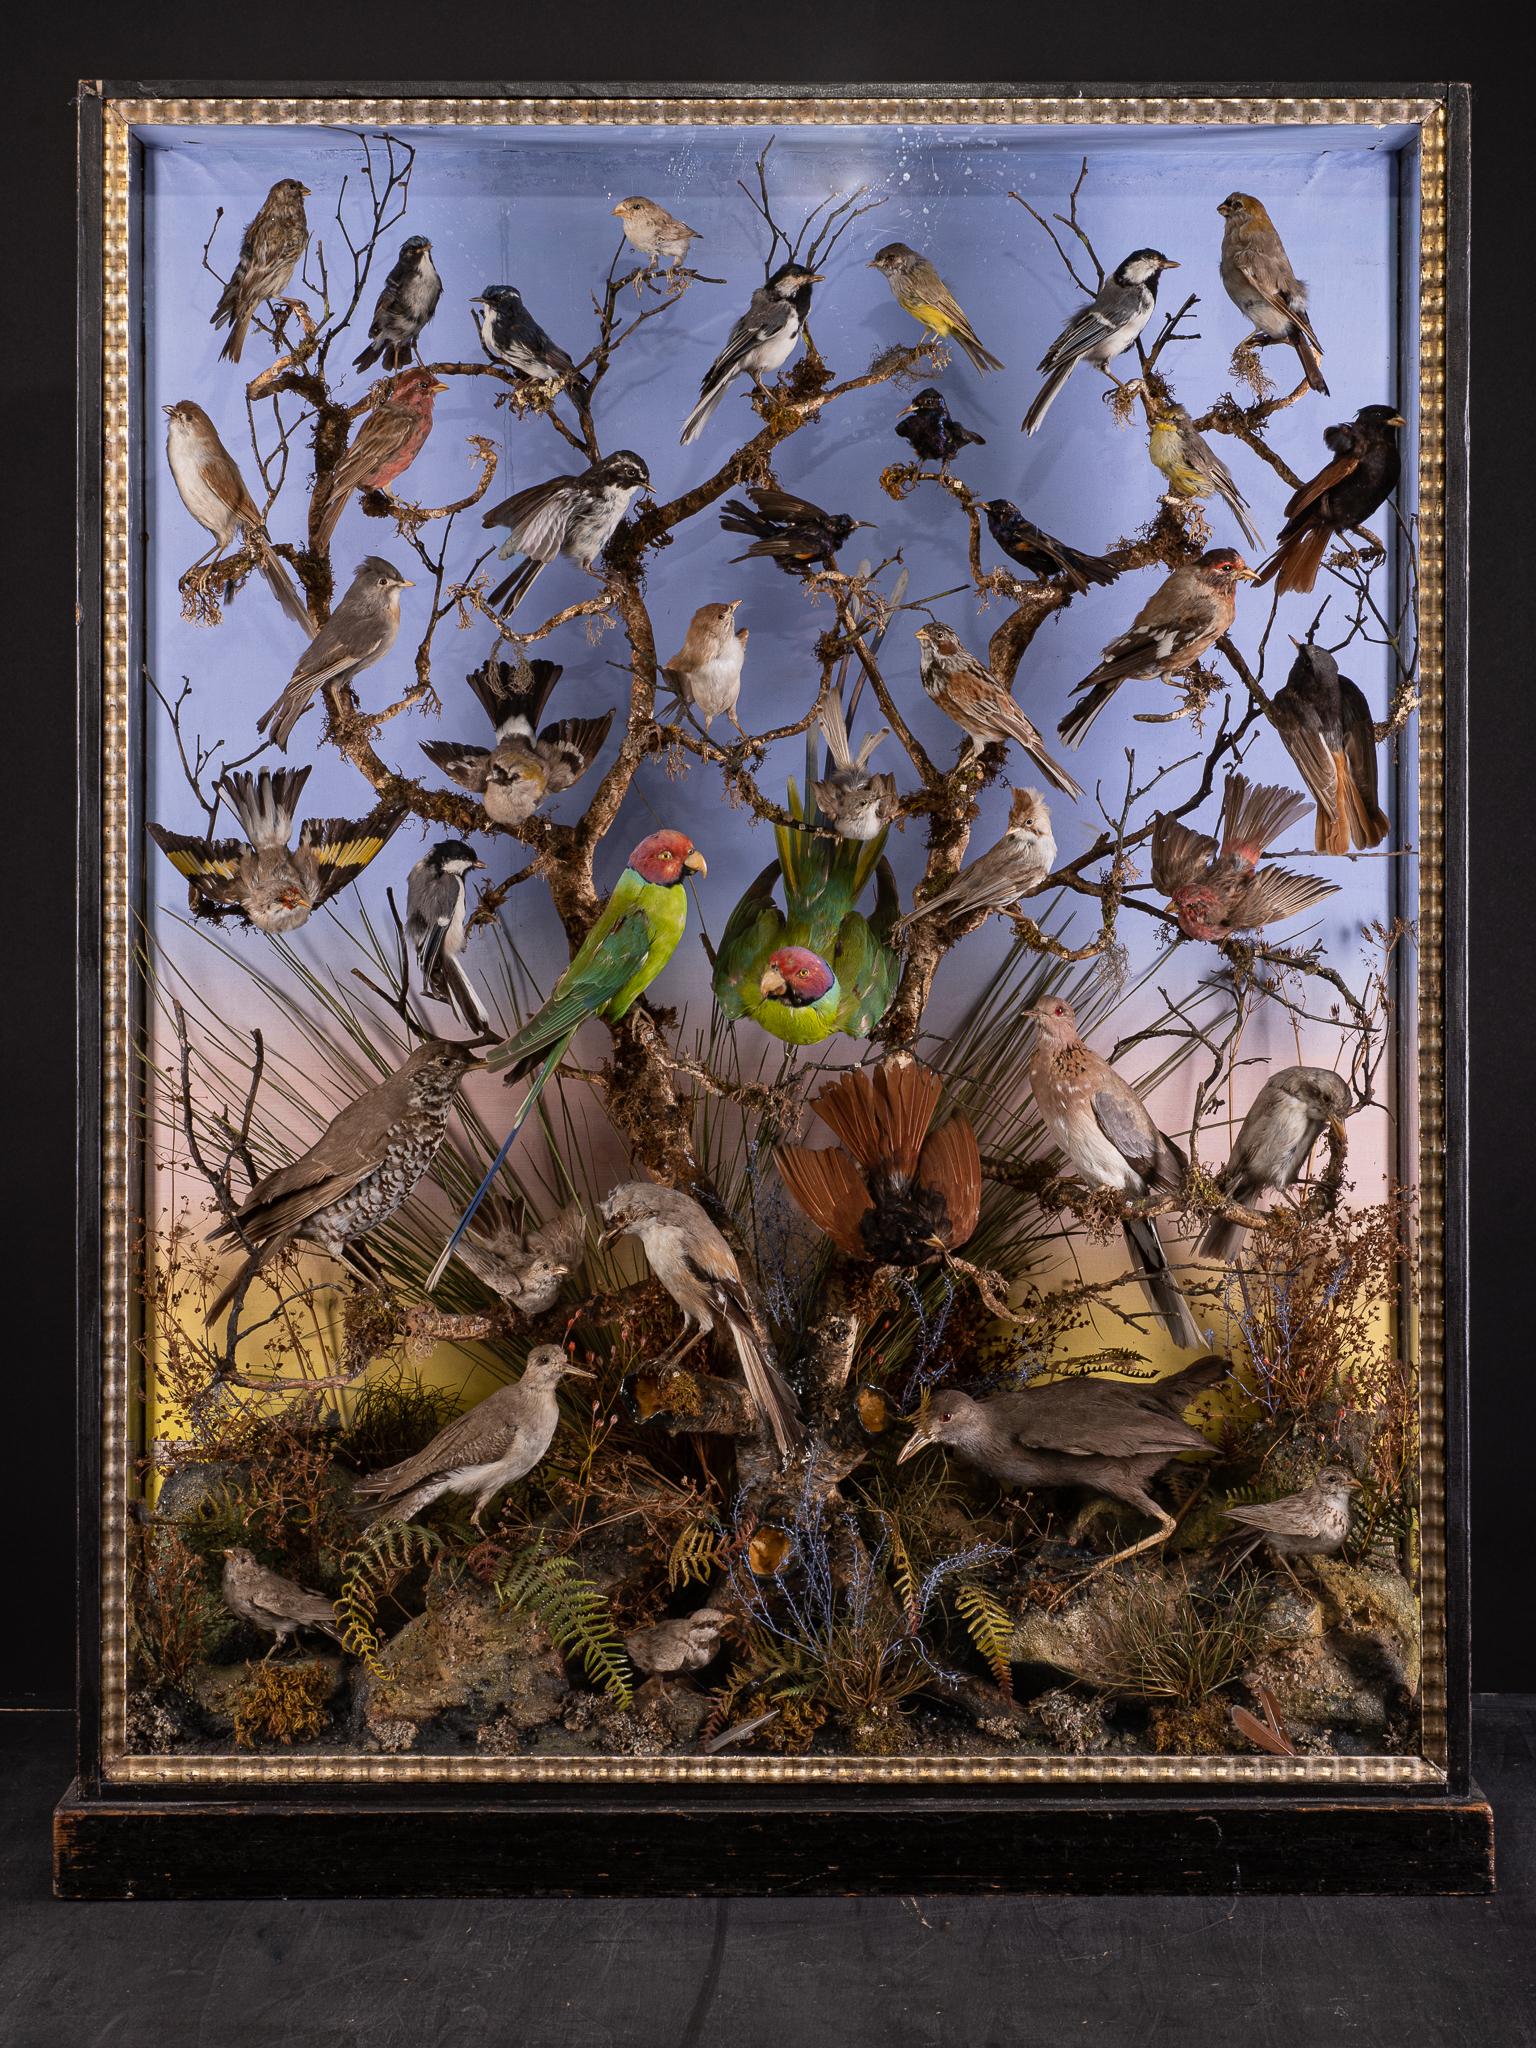 Diorama victorien ancien du 19e siècle composé de 40 oiseaux tropicaux taxidermisés, étiquetés par W.E.Dawes, diversement perchés sur des branches et au sol, dans son coffret ébonisé à trois vitres d'origine.

Les espèces antérieures à la convention